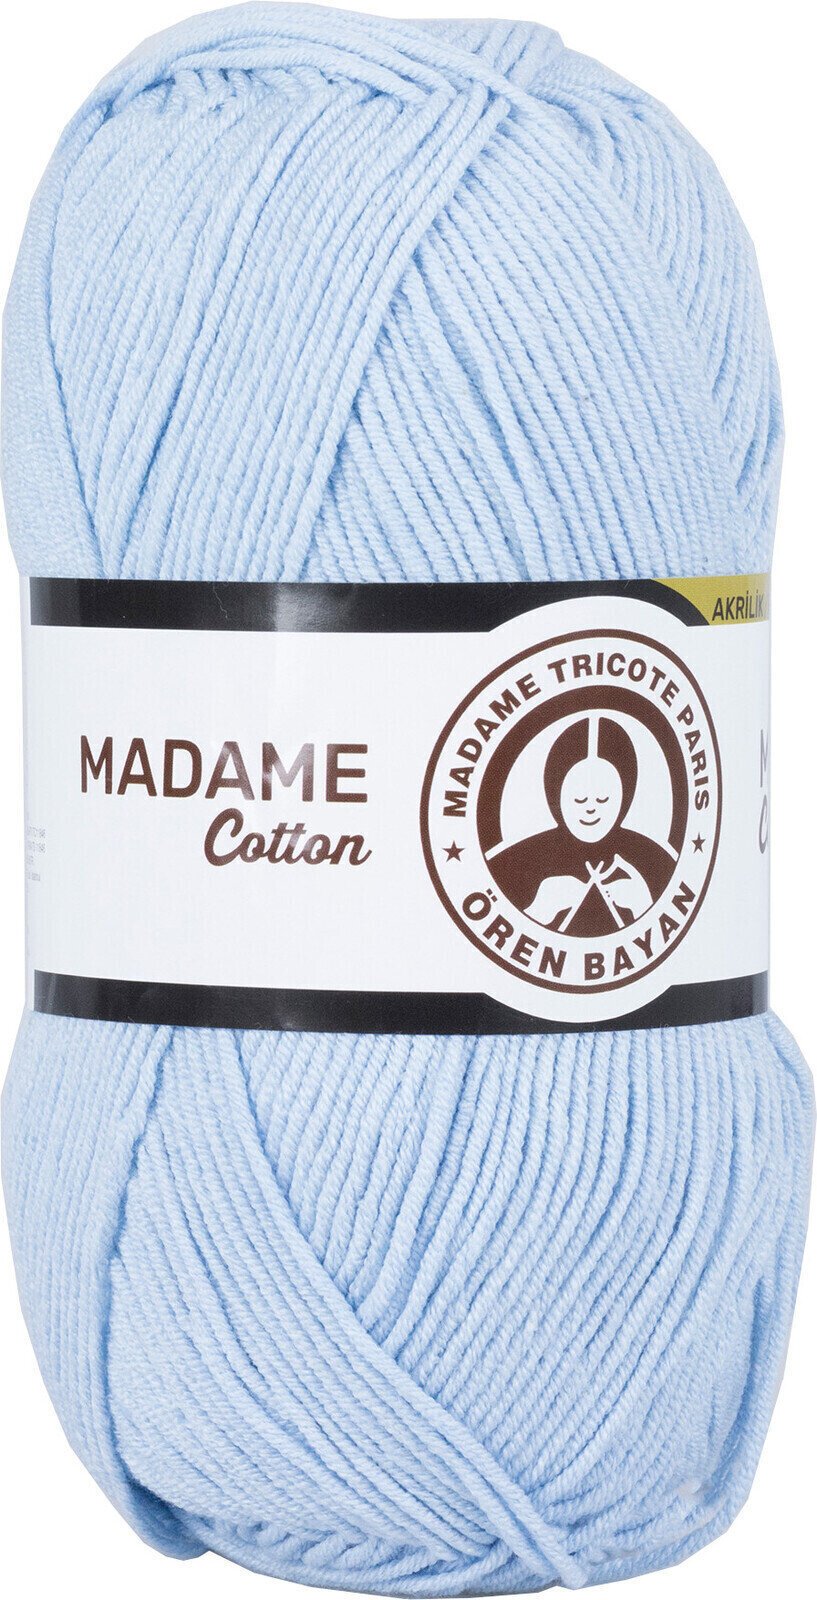 Breigaren Madame Tricote Paris Madame Cotton 014 Light Blue